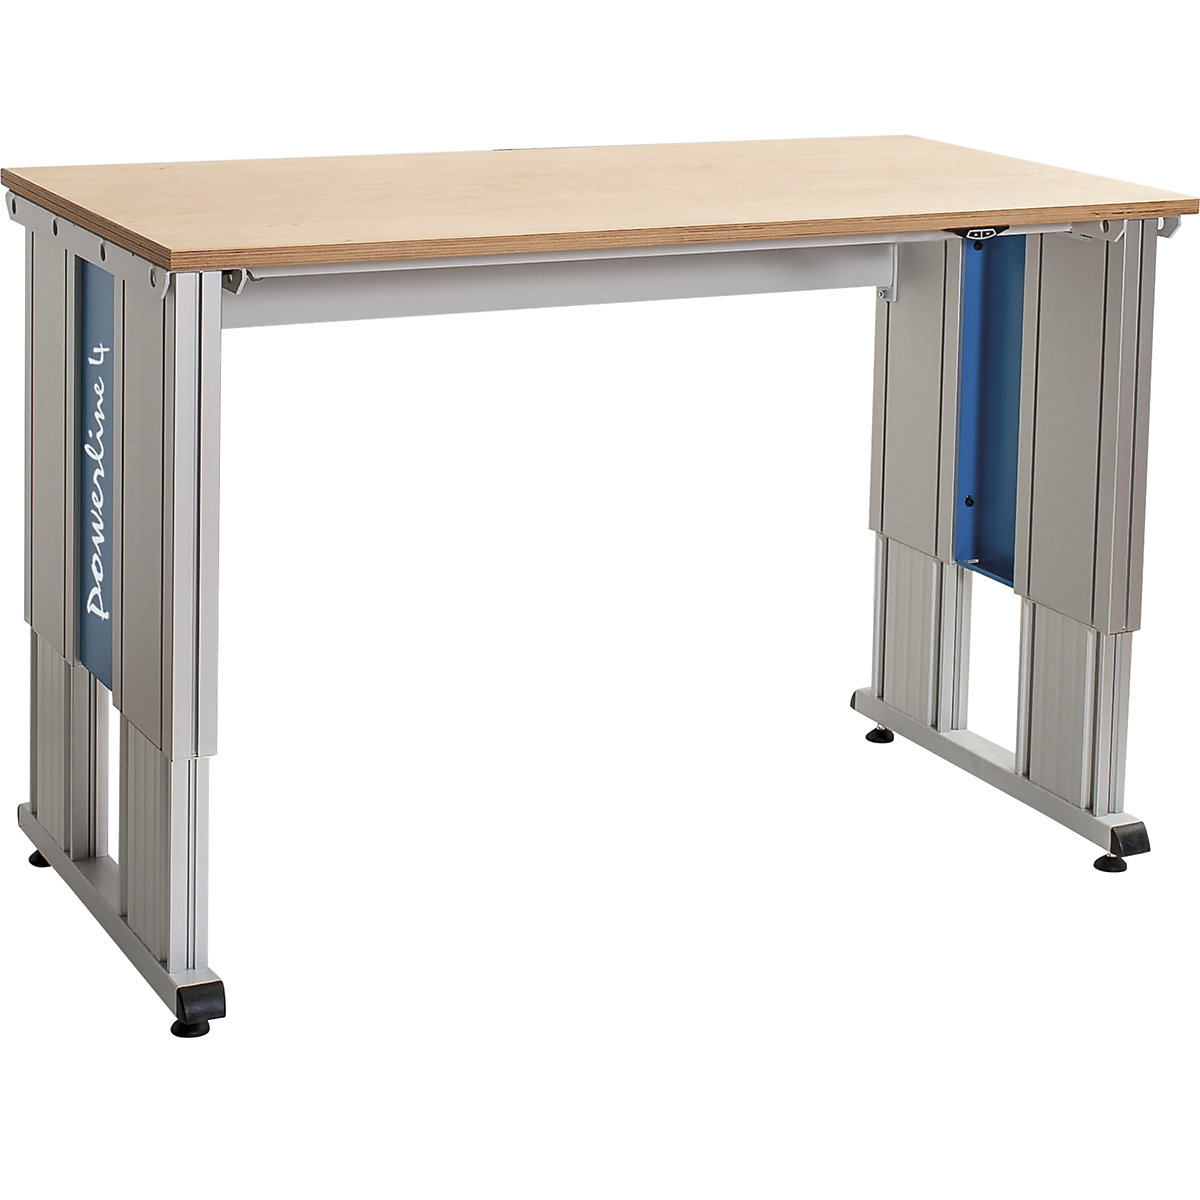 Stůl pro velká zatížení s elektrickým přestavováním výšky – bedrunka hirth